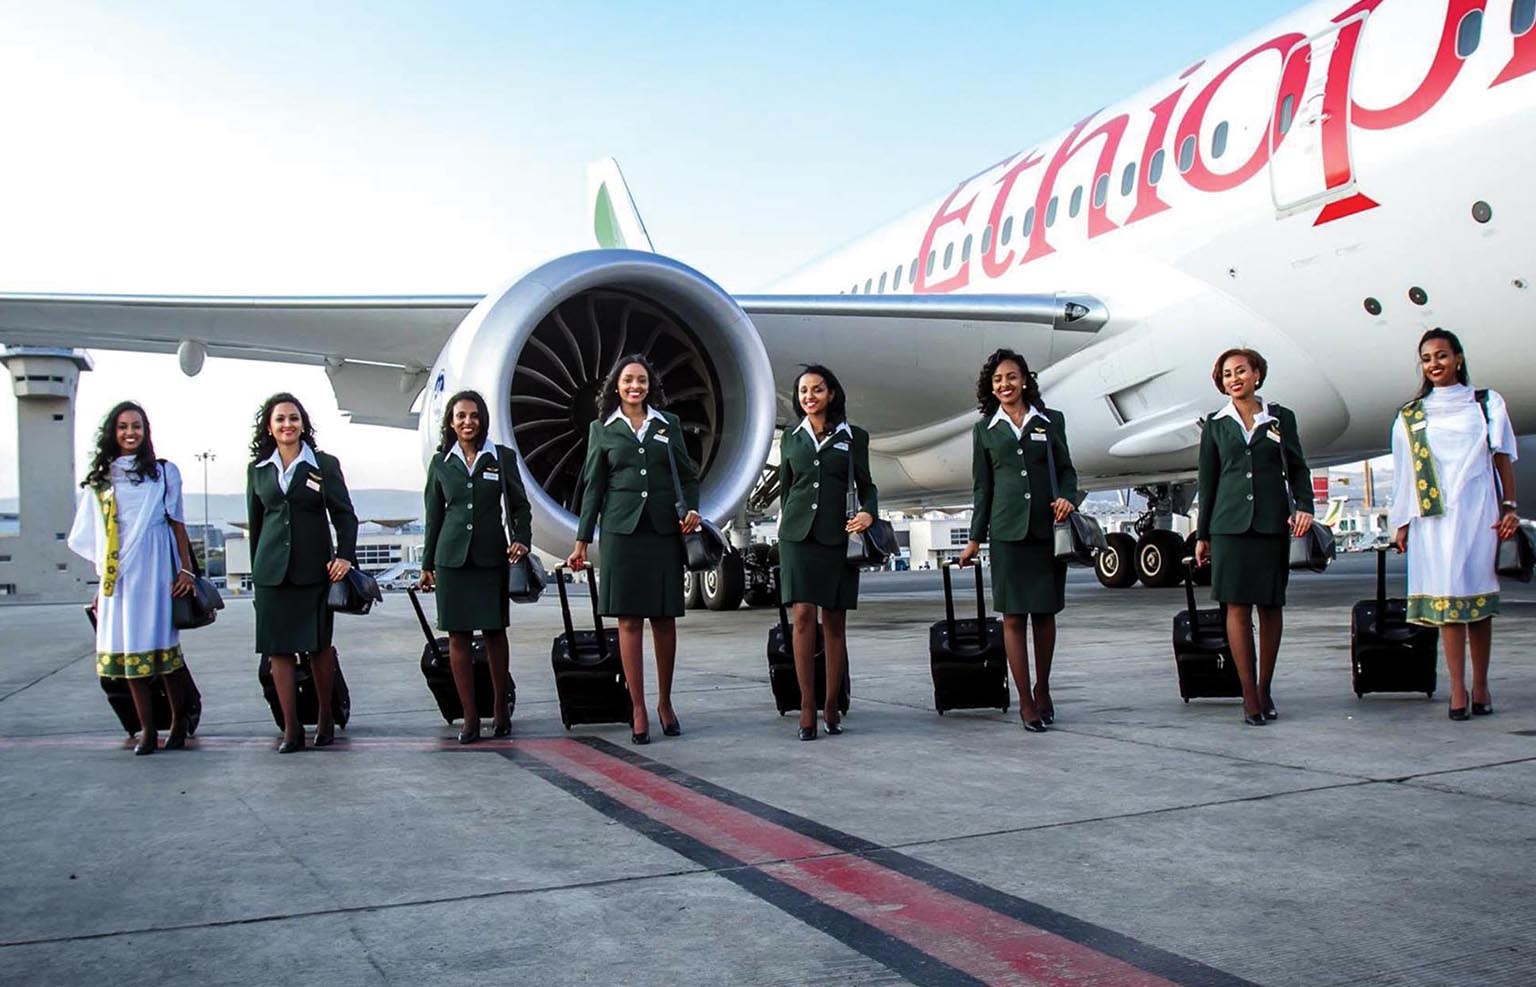 La RDC envisage la création d’une nouvelle compagnie aérienne en coentreprise avec Ethiopian Airlines